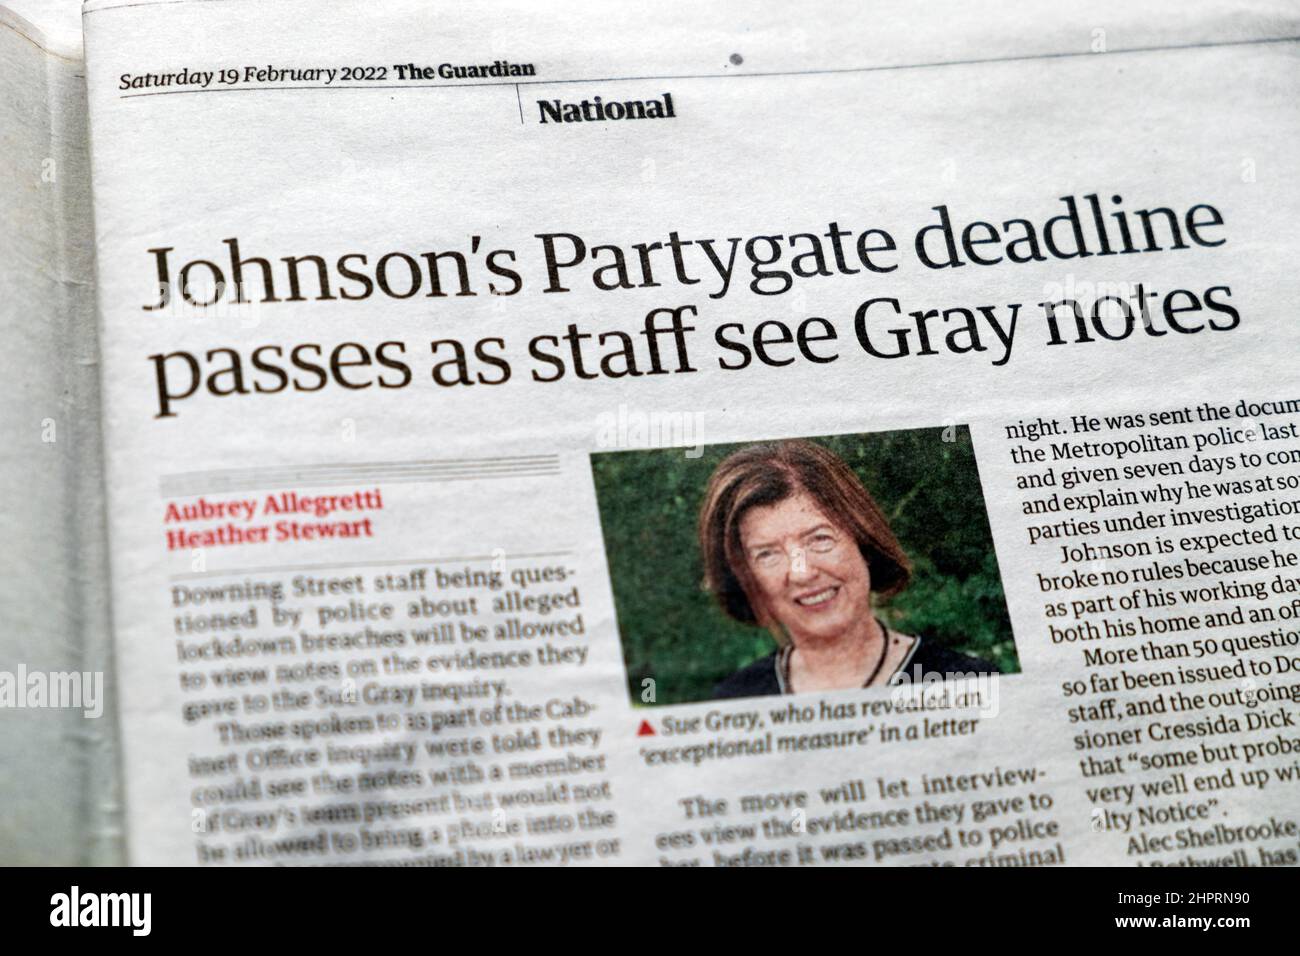 Boris 'Johnson's Partygate Deadline passa come staff vedere Grey Notes' Guardian giornale di taglio articolo di taglio del taglio il 19 febbraio 2022 Regno Unito Foto Stock